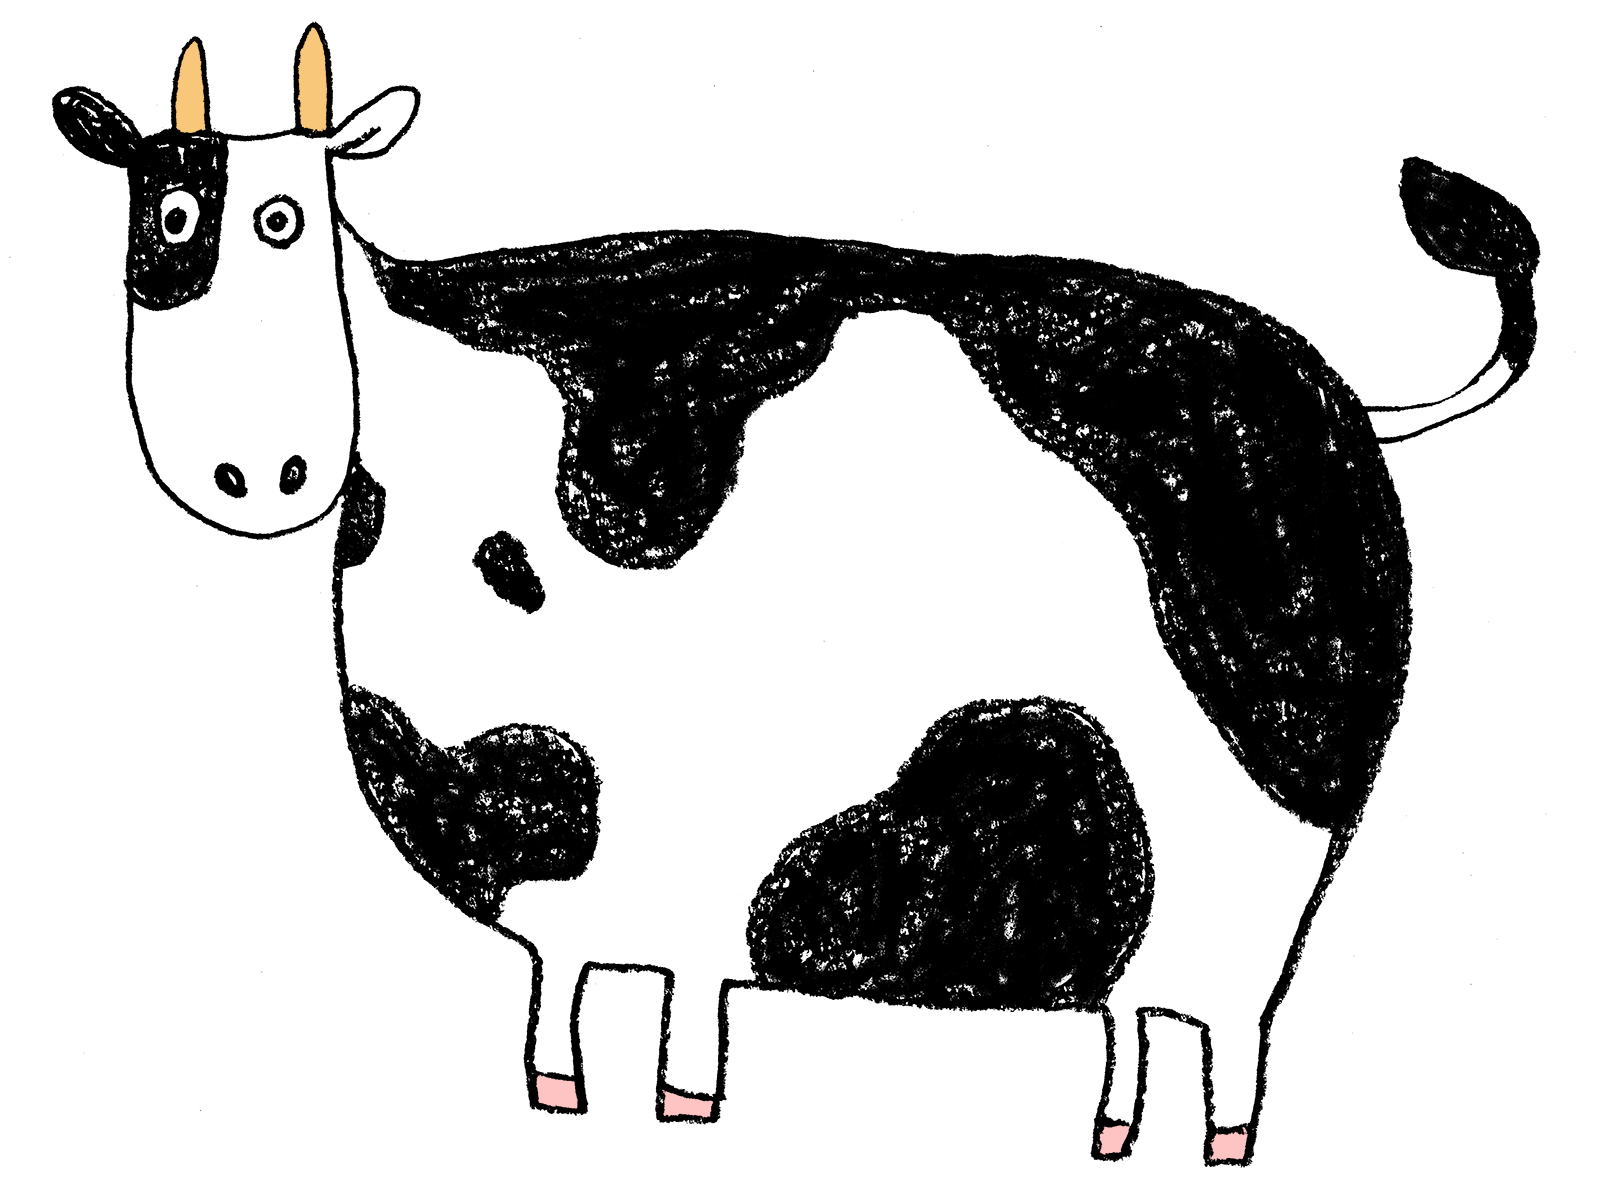 ゆるかわいい牛のイラスト 丑 21年干支 横向き 全身 えんぴつと画用紙